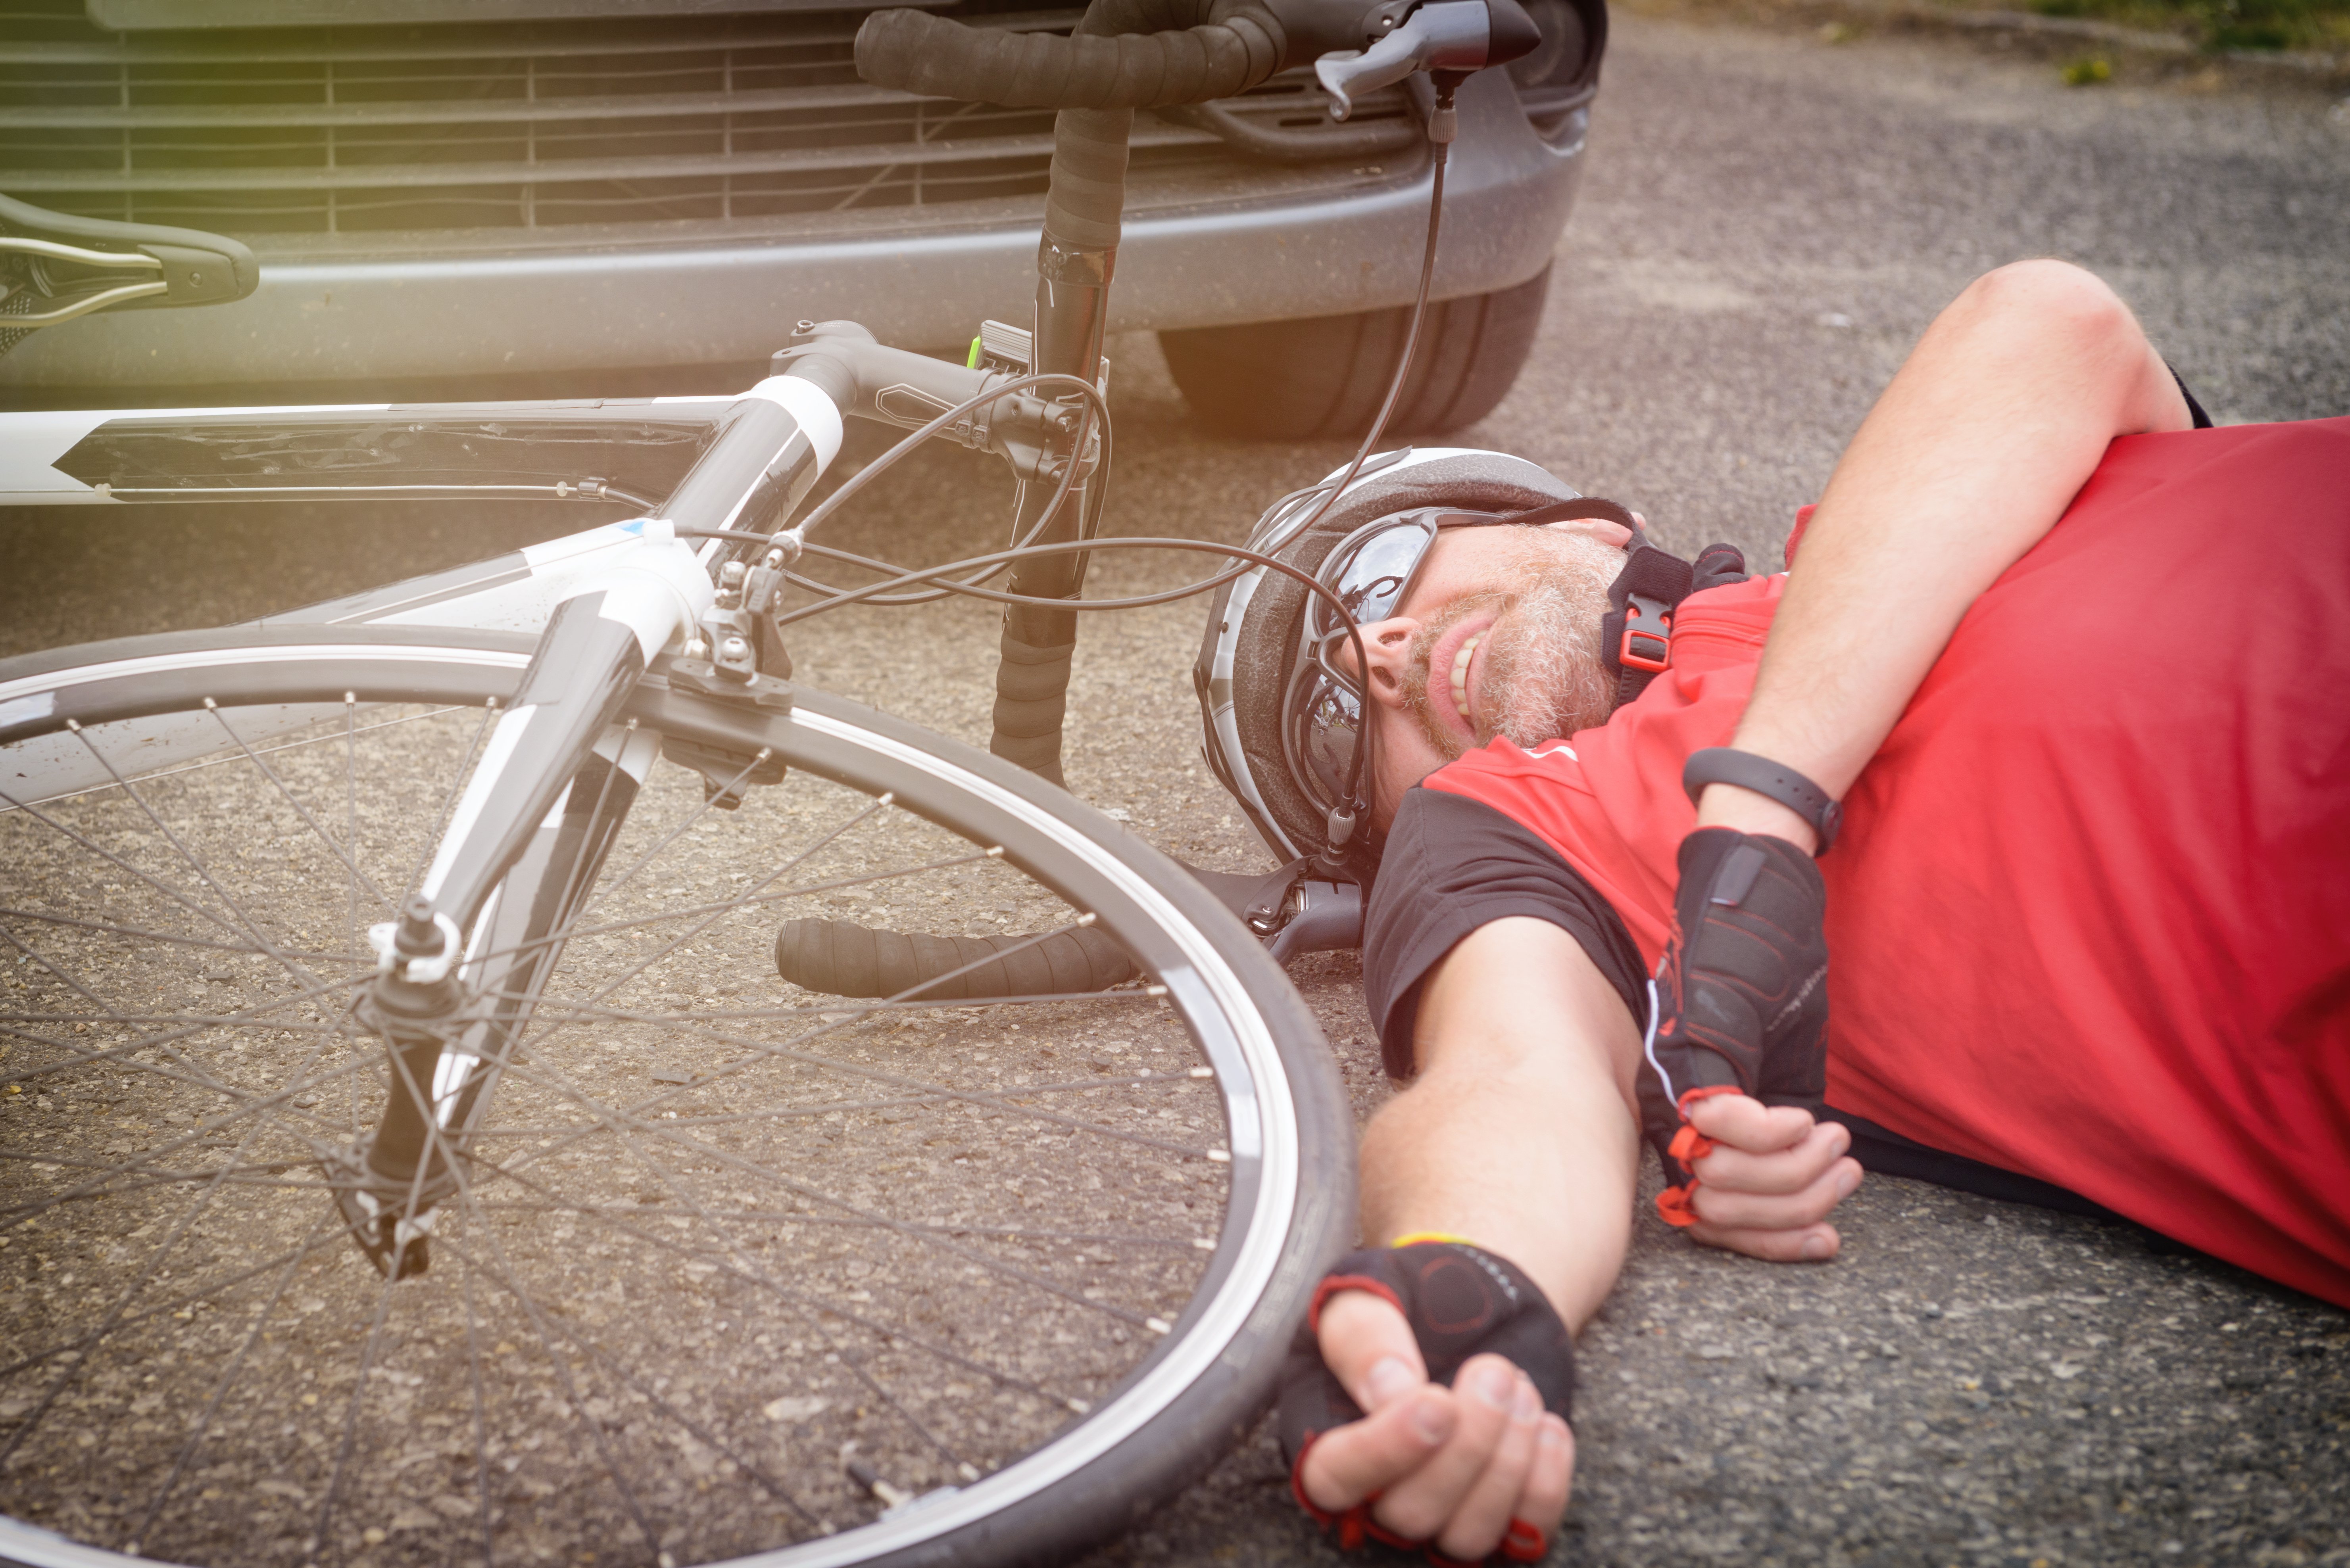 Verkeersongeval met een wielrenner: bijzondere aansprakelijkheidsregels?